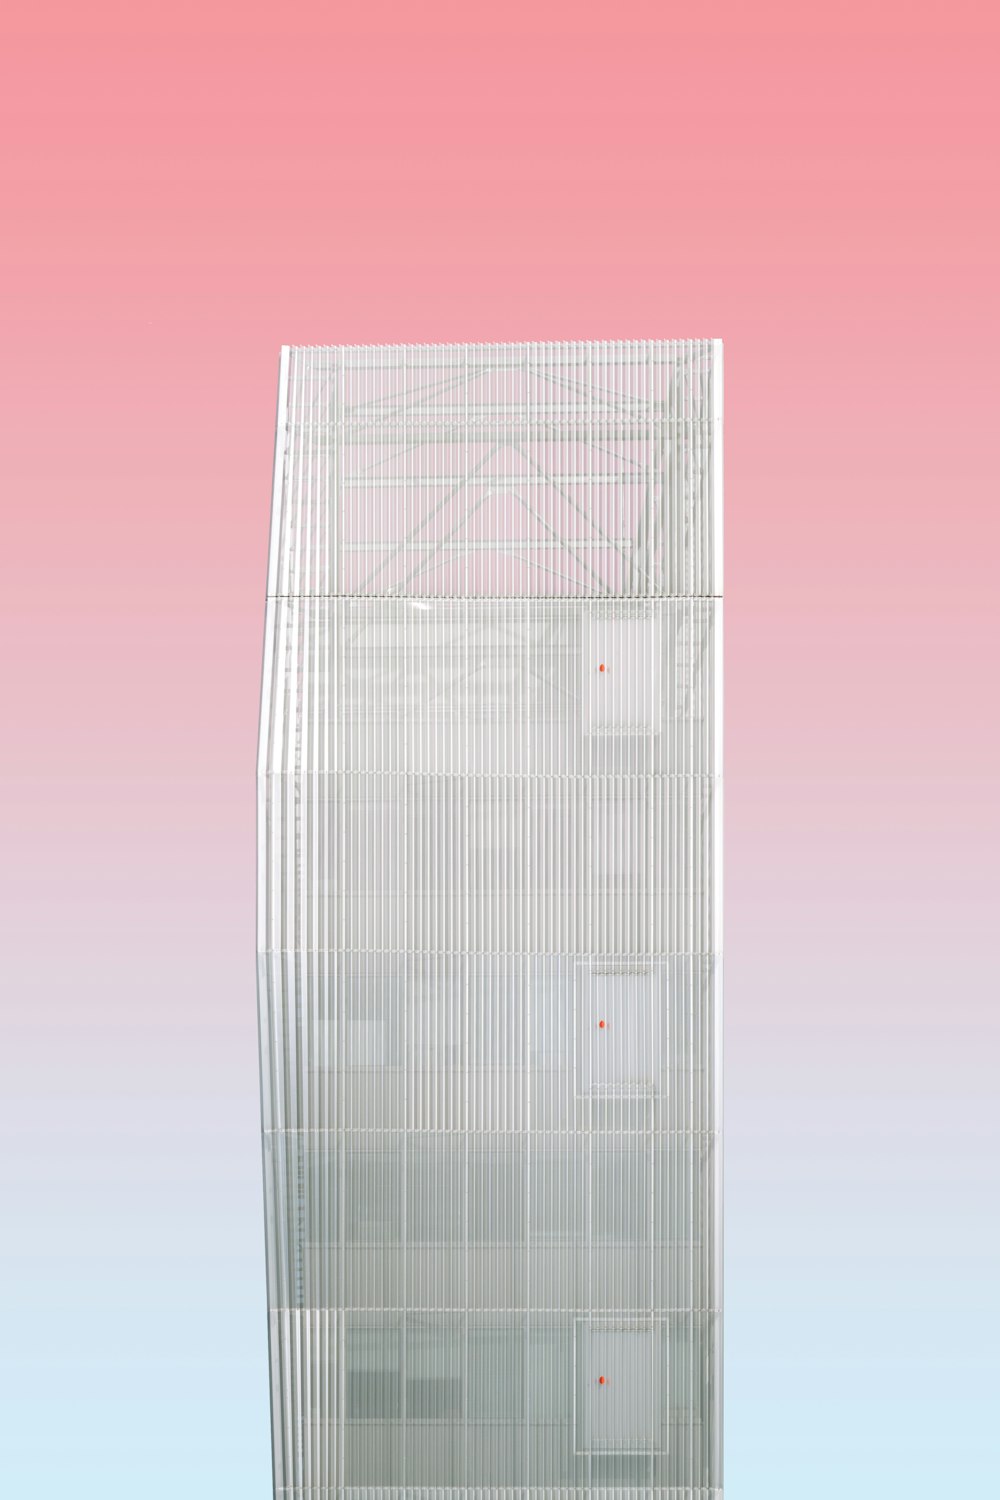 marco rectangular de metal blanco